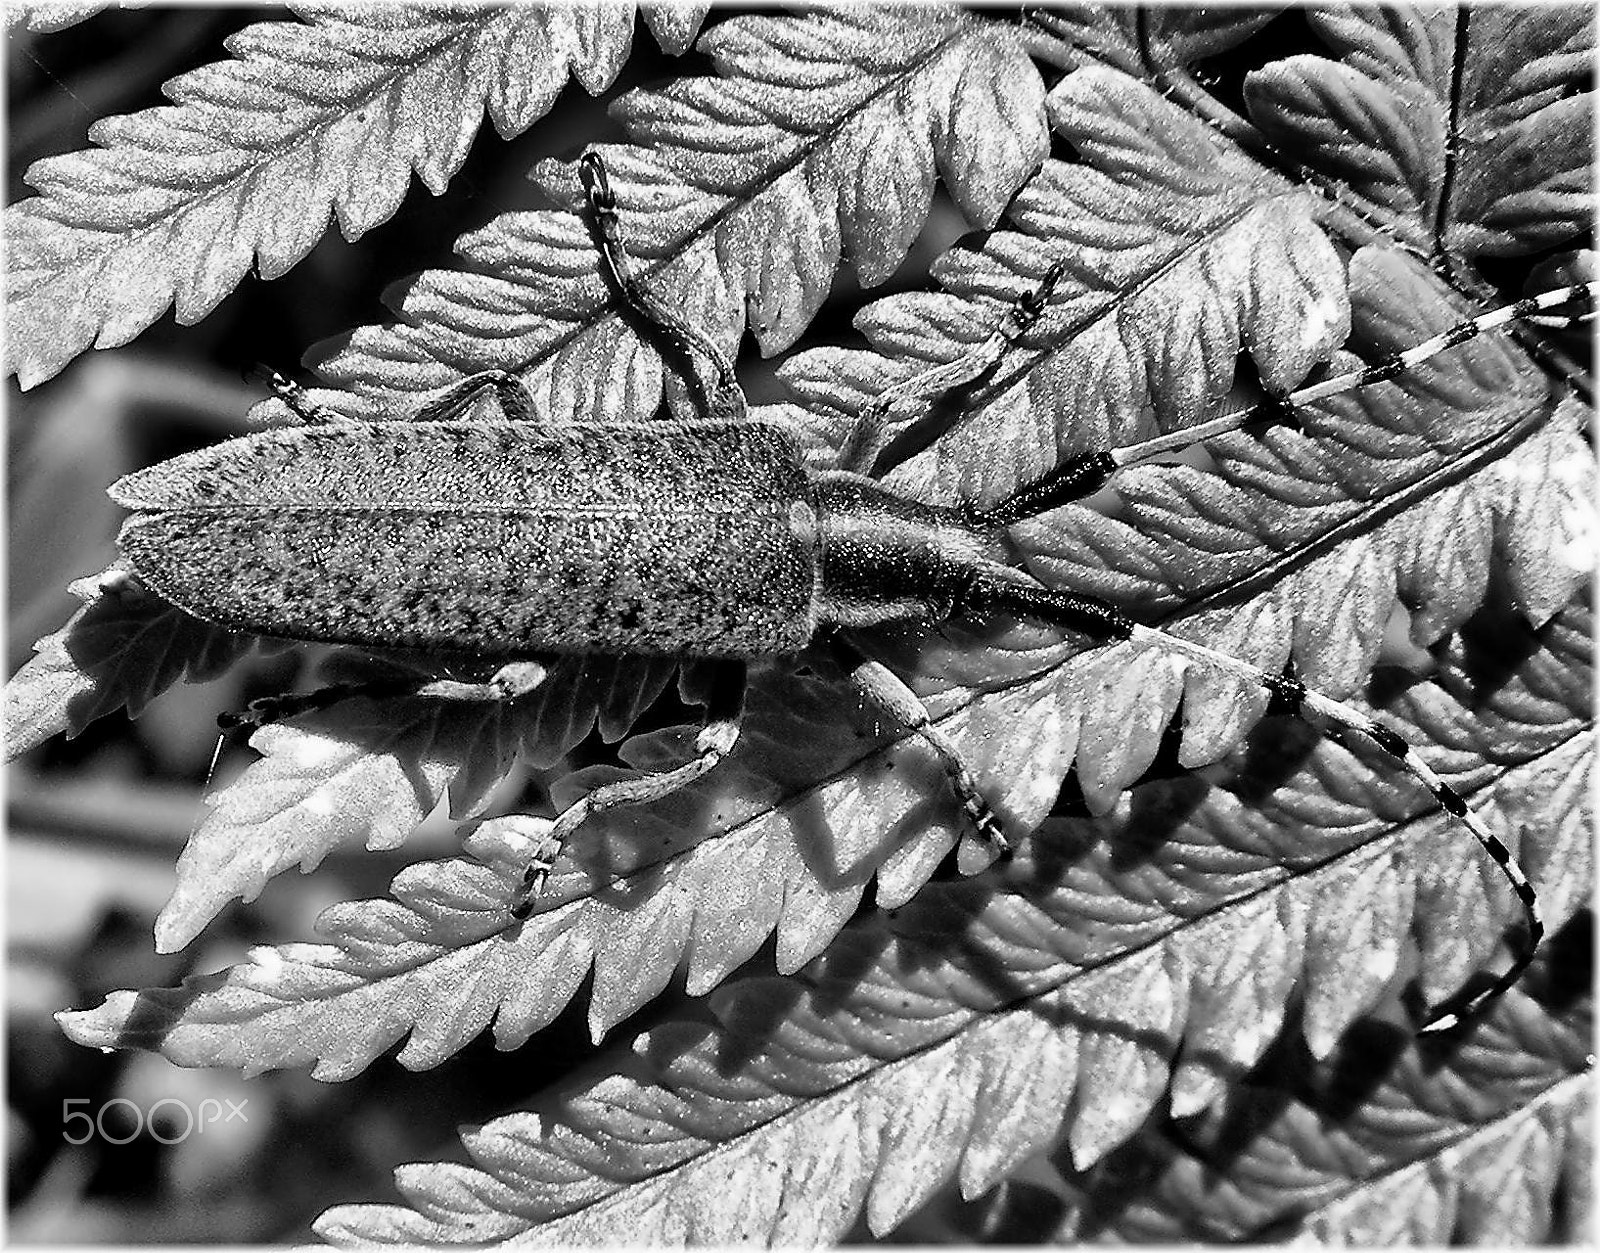 Nikon COOLPIX S4 sample photo. Escarabajo photography